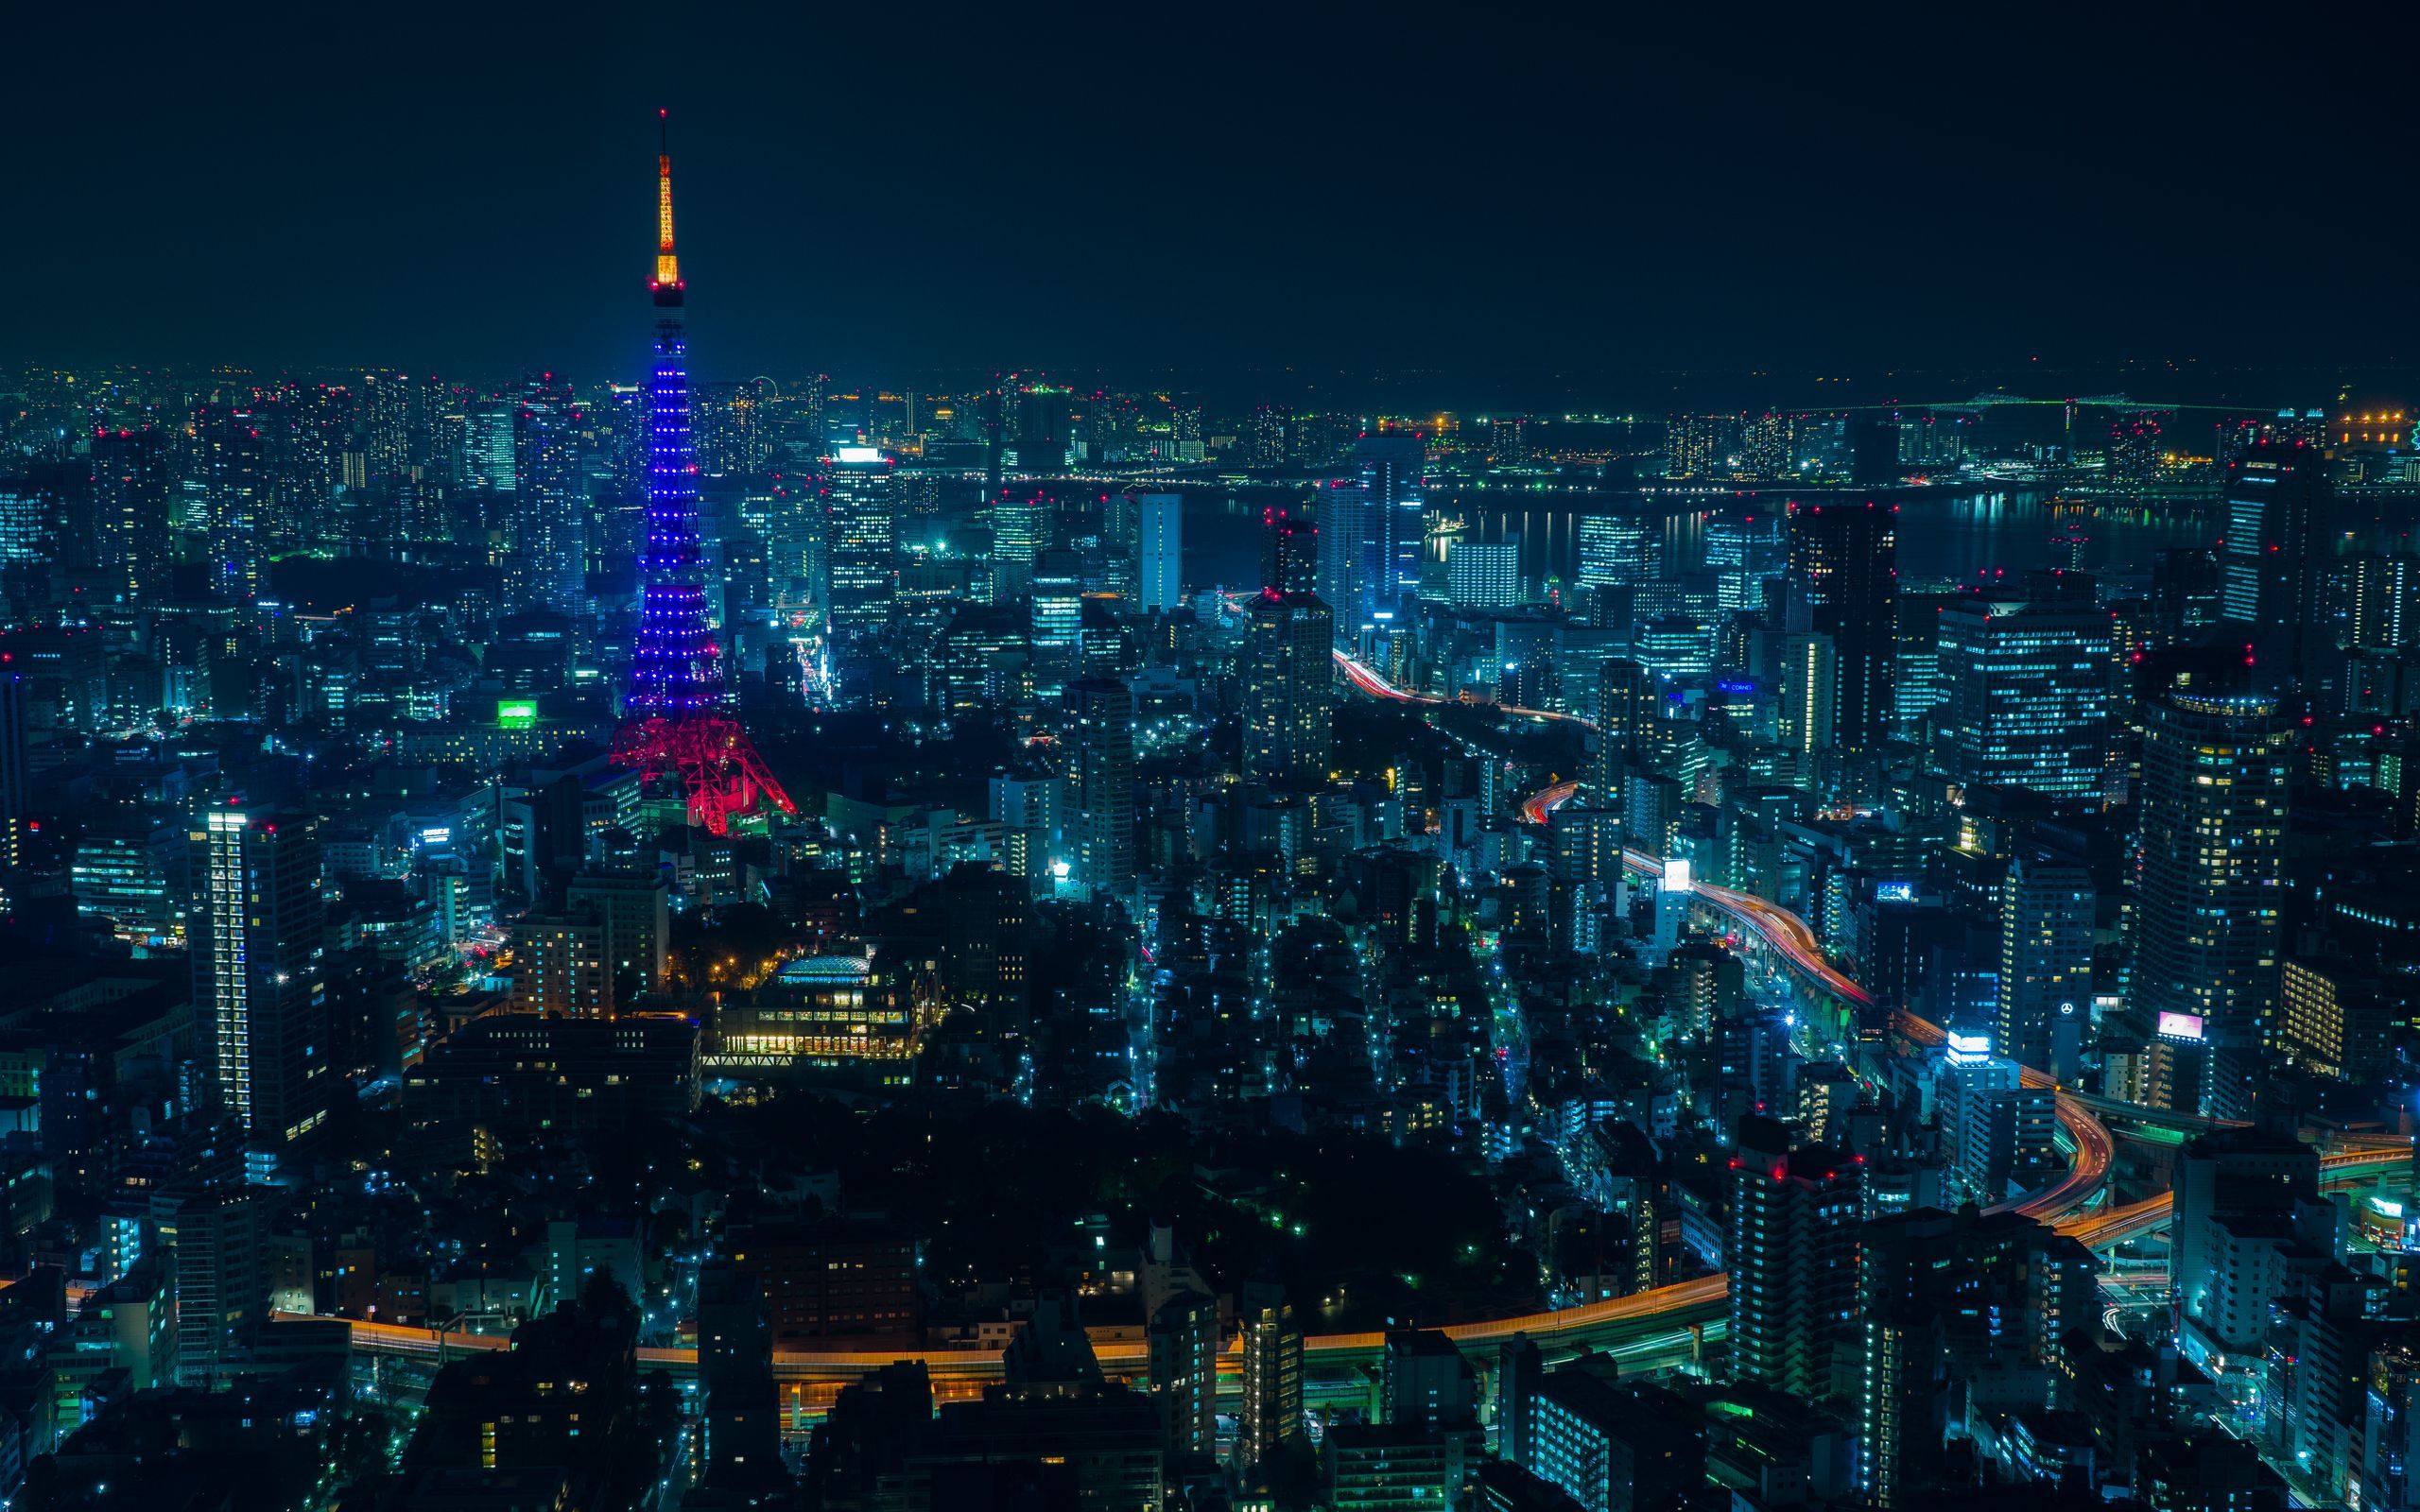 Download wallpaper 2560x1600 tokyo, night city, skyscrapers